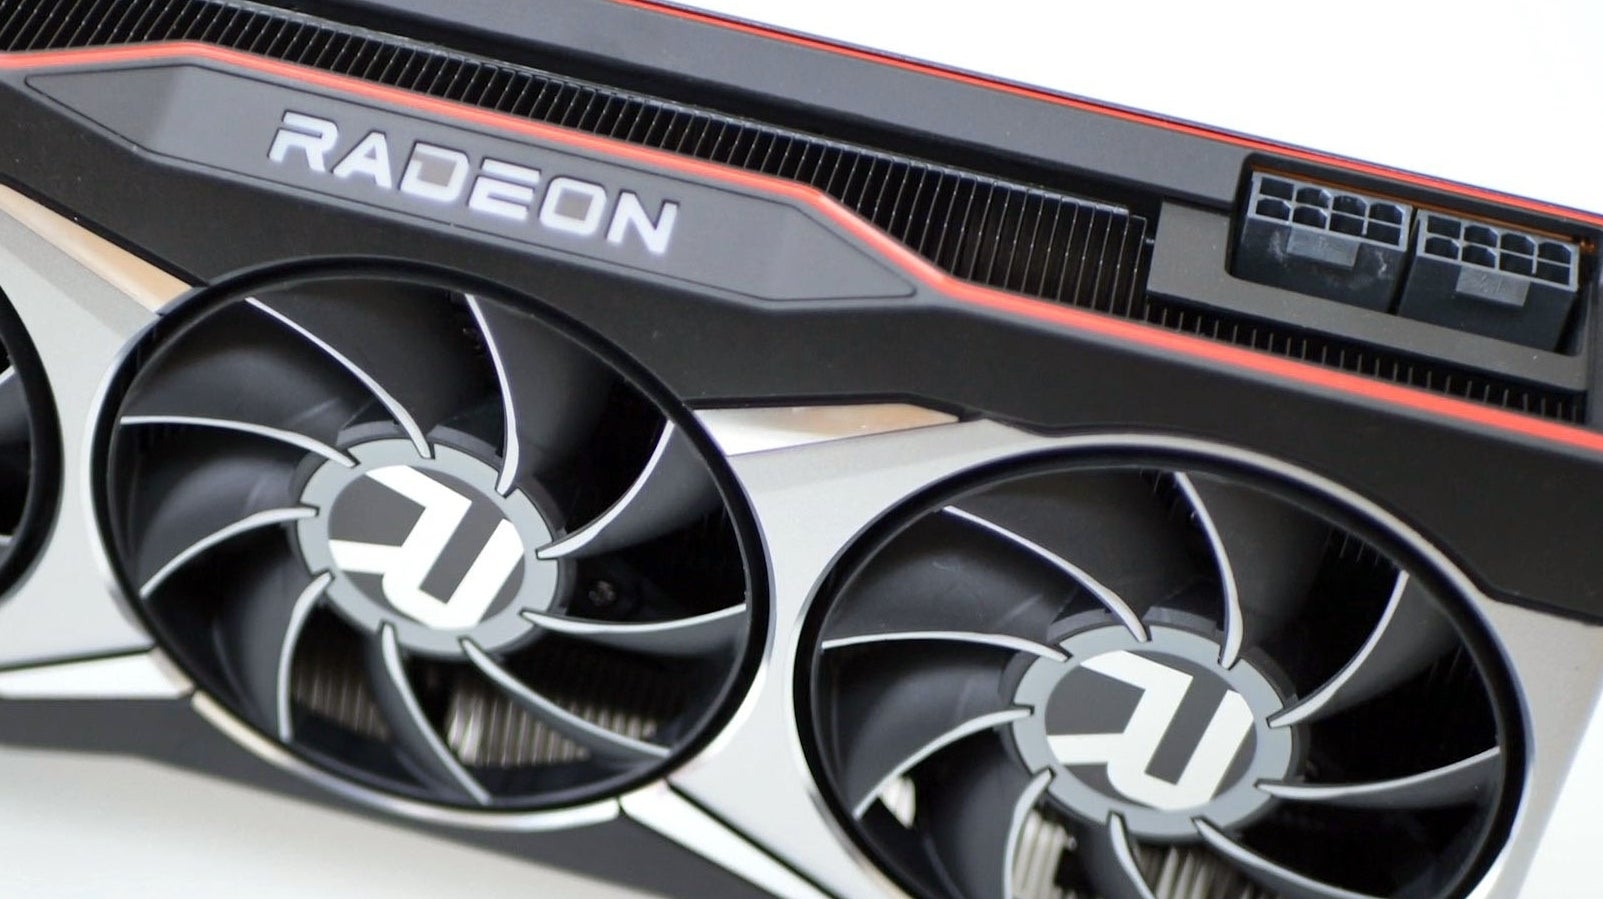 Immagine di AMD Radeon RX 6900 XT - recensione: vale davvero un migliaio di euro?